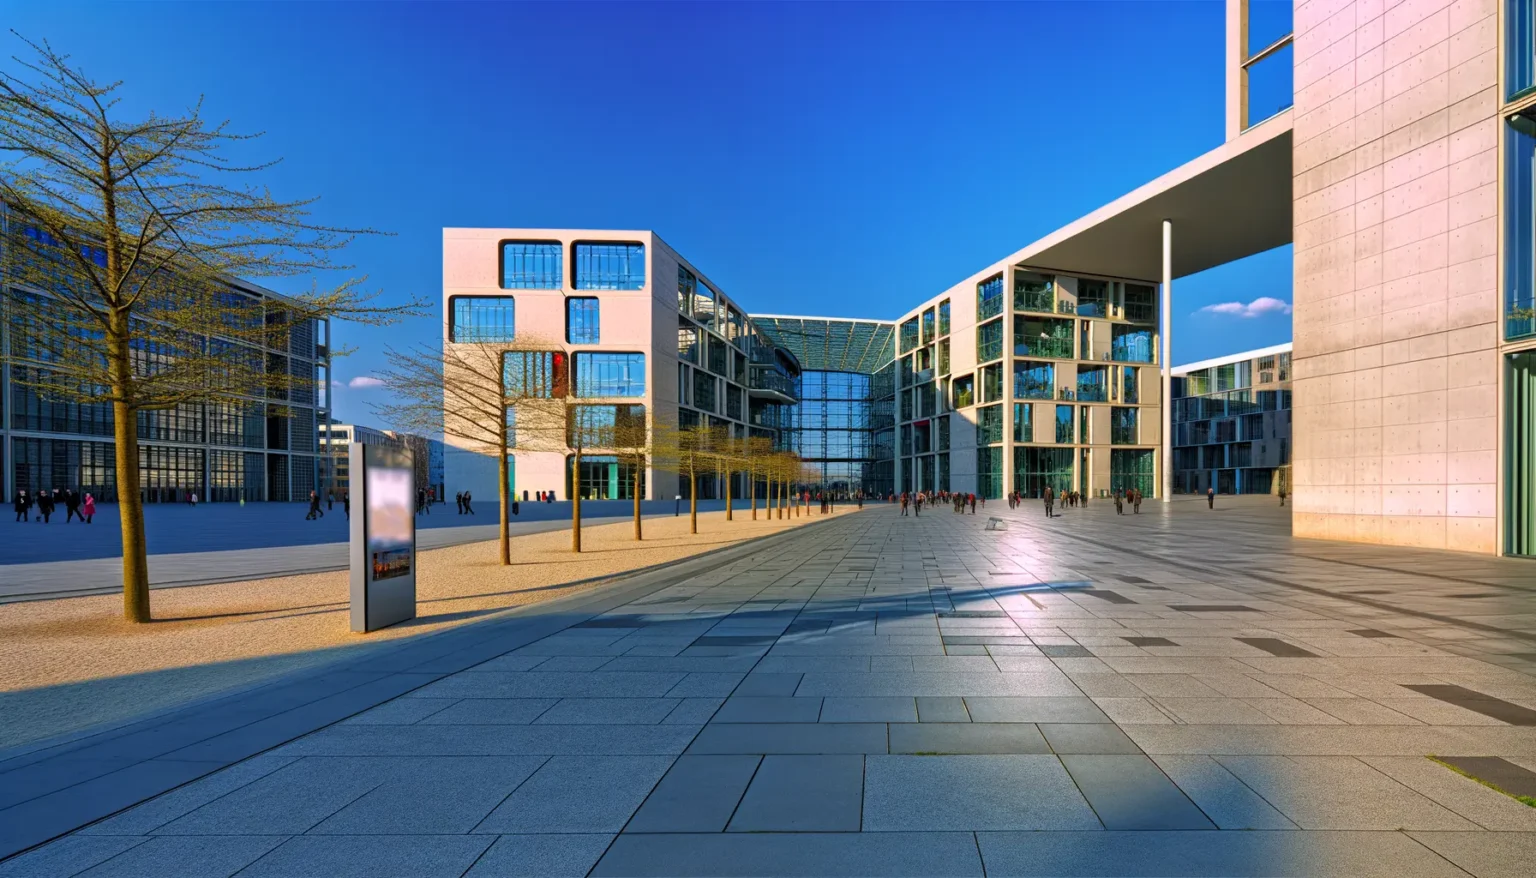 Moderner Platz mit futuristischen Gebäuden, großen Fensterfronten und einer geräumigen, gepflasterten Fläche, Menschen gehen im Abstand unter klarem blauem Himmel.